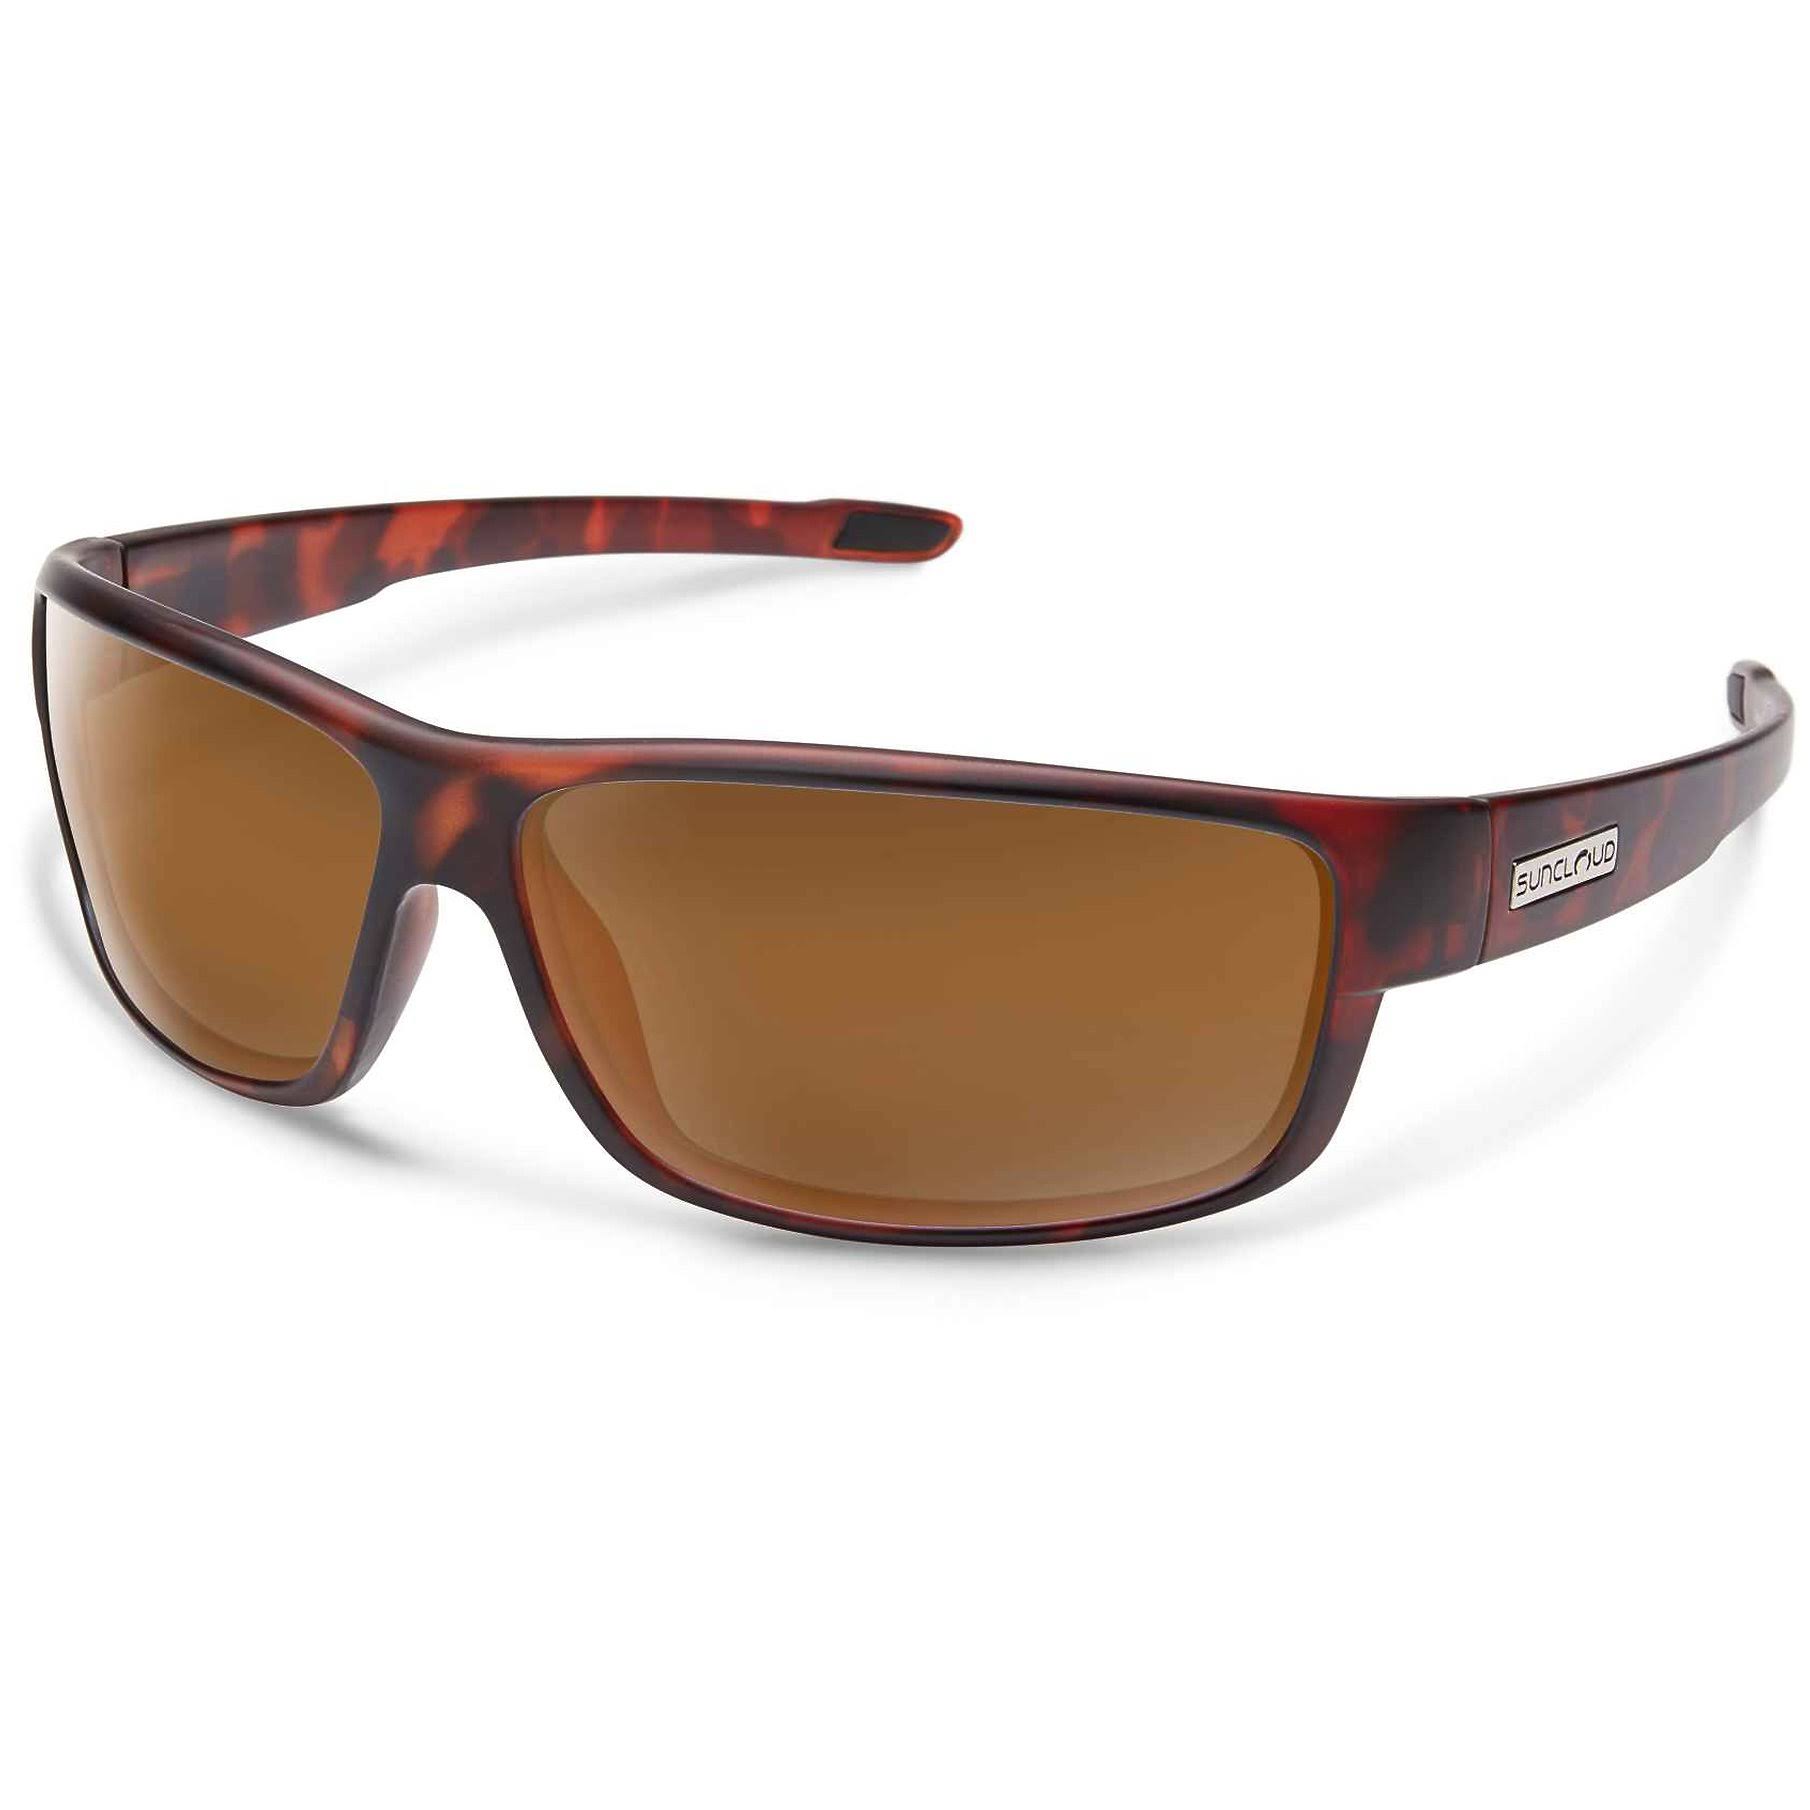 Suncloud Voucher Sunglasses - Matte Tortoise, Brown